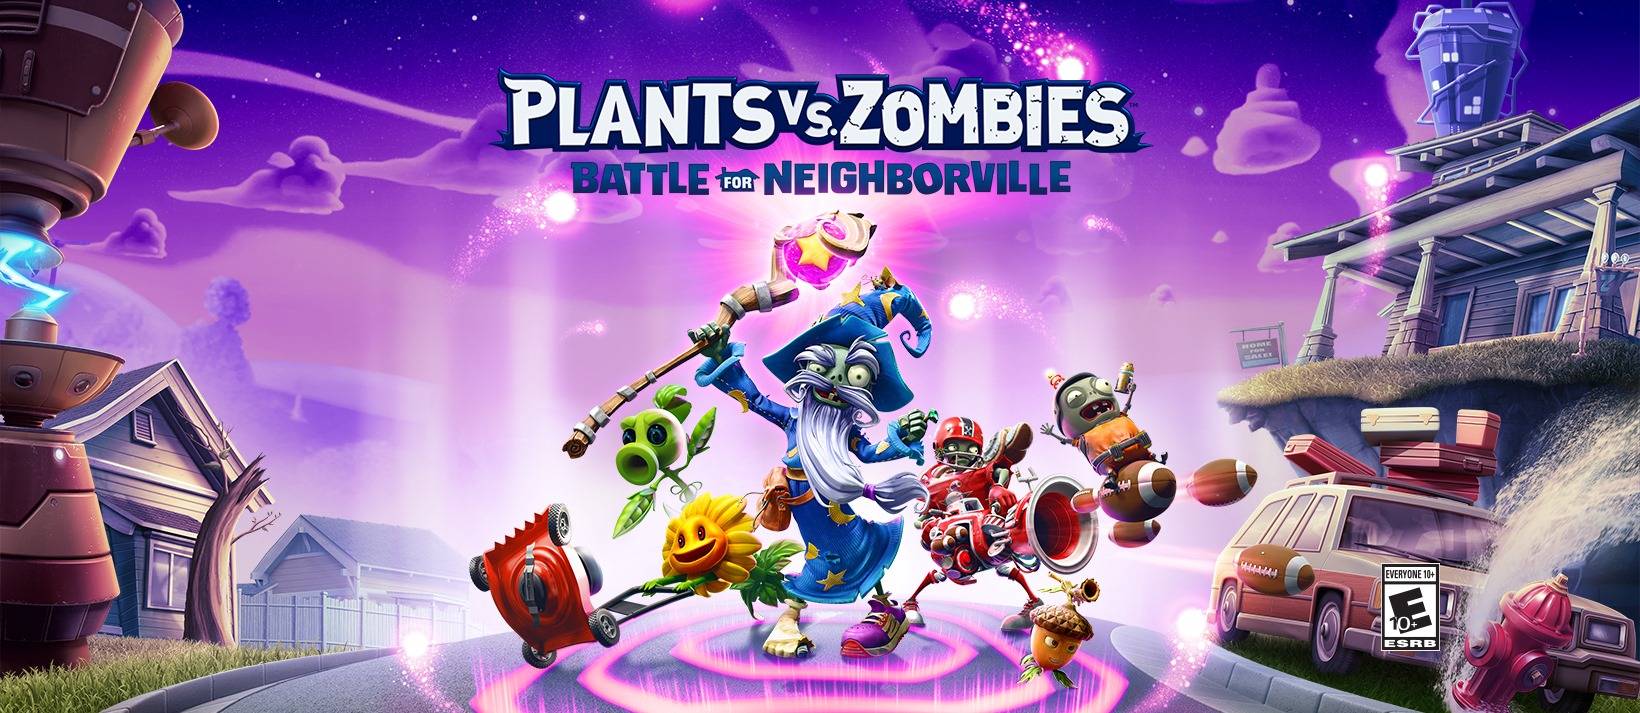 Pausa para Café] Como jogar Plants vs Zombies™ 2 no PC-Tutoriais de jogos -LDPlayer